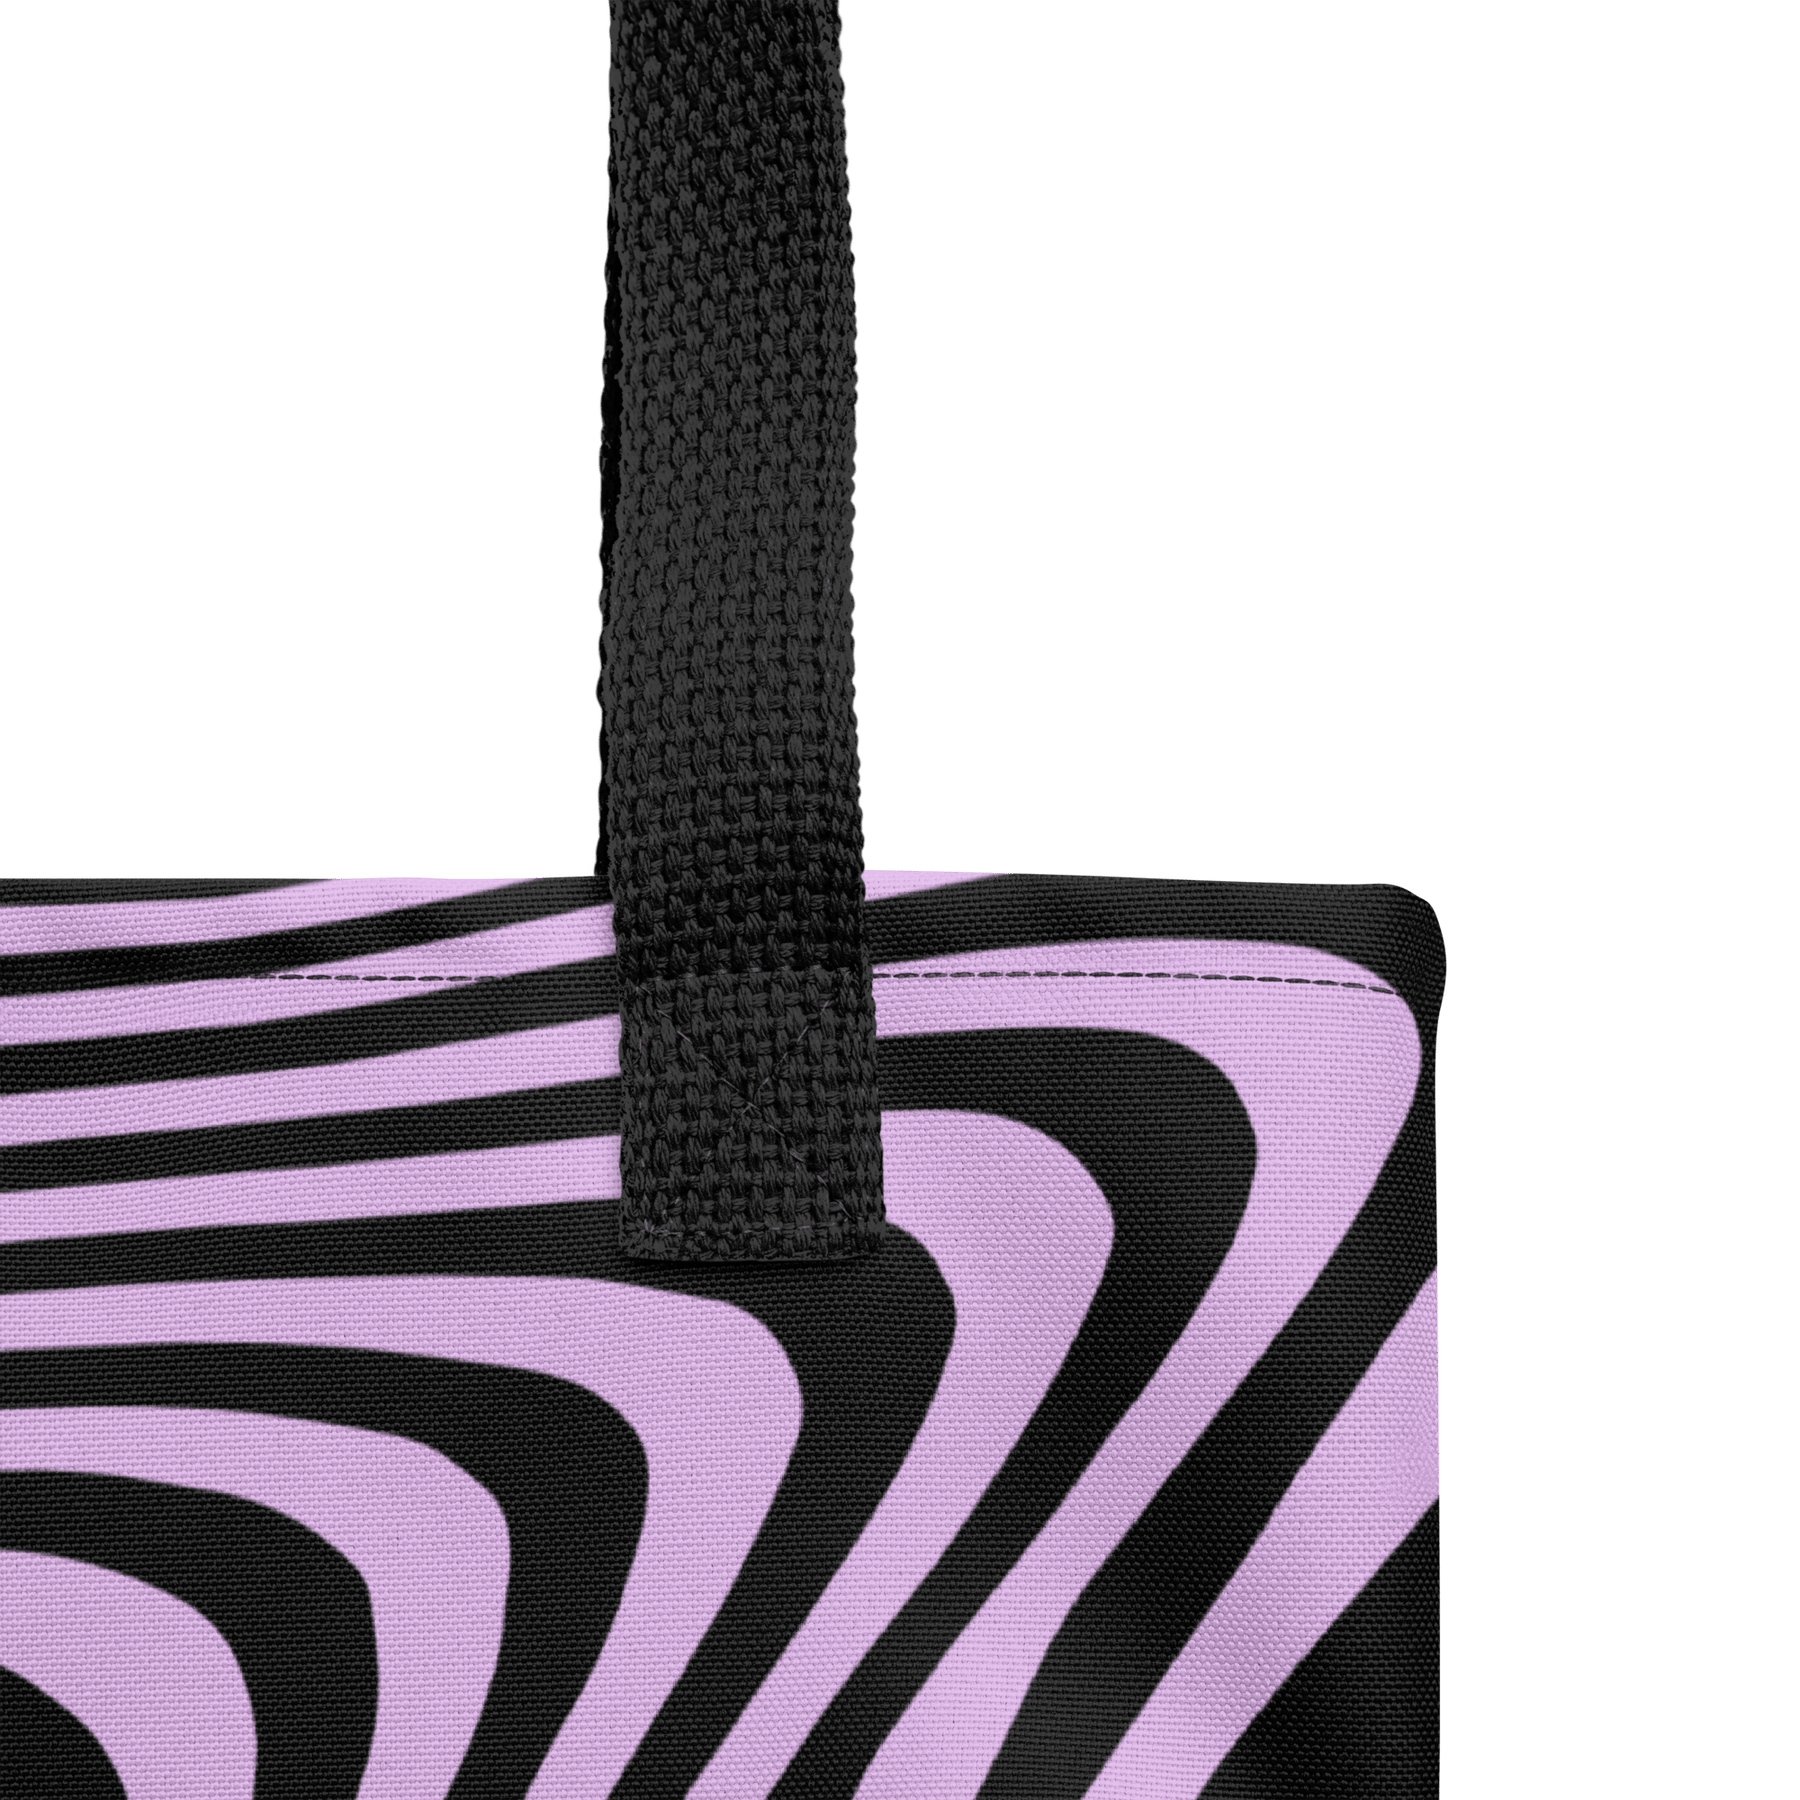 Retro Wave Tote Bag - Goth Cloth Co.9766100_4533